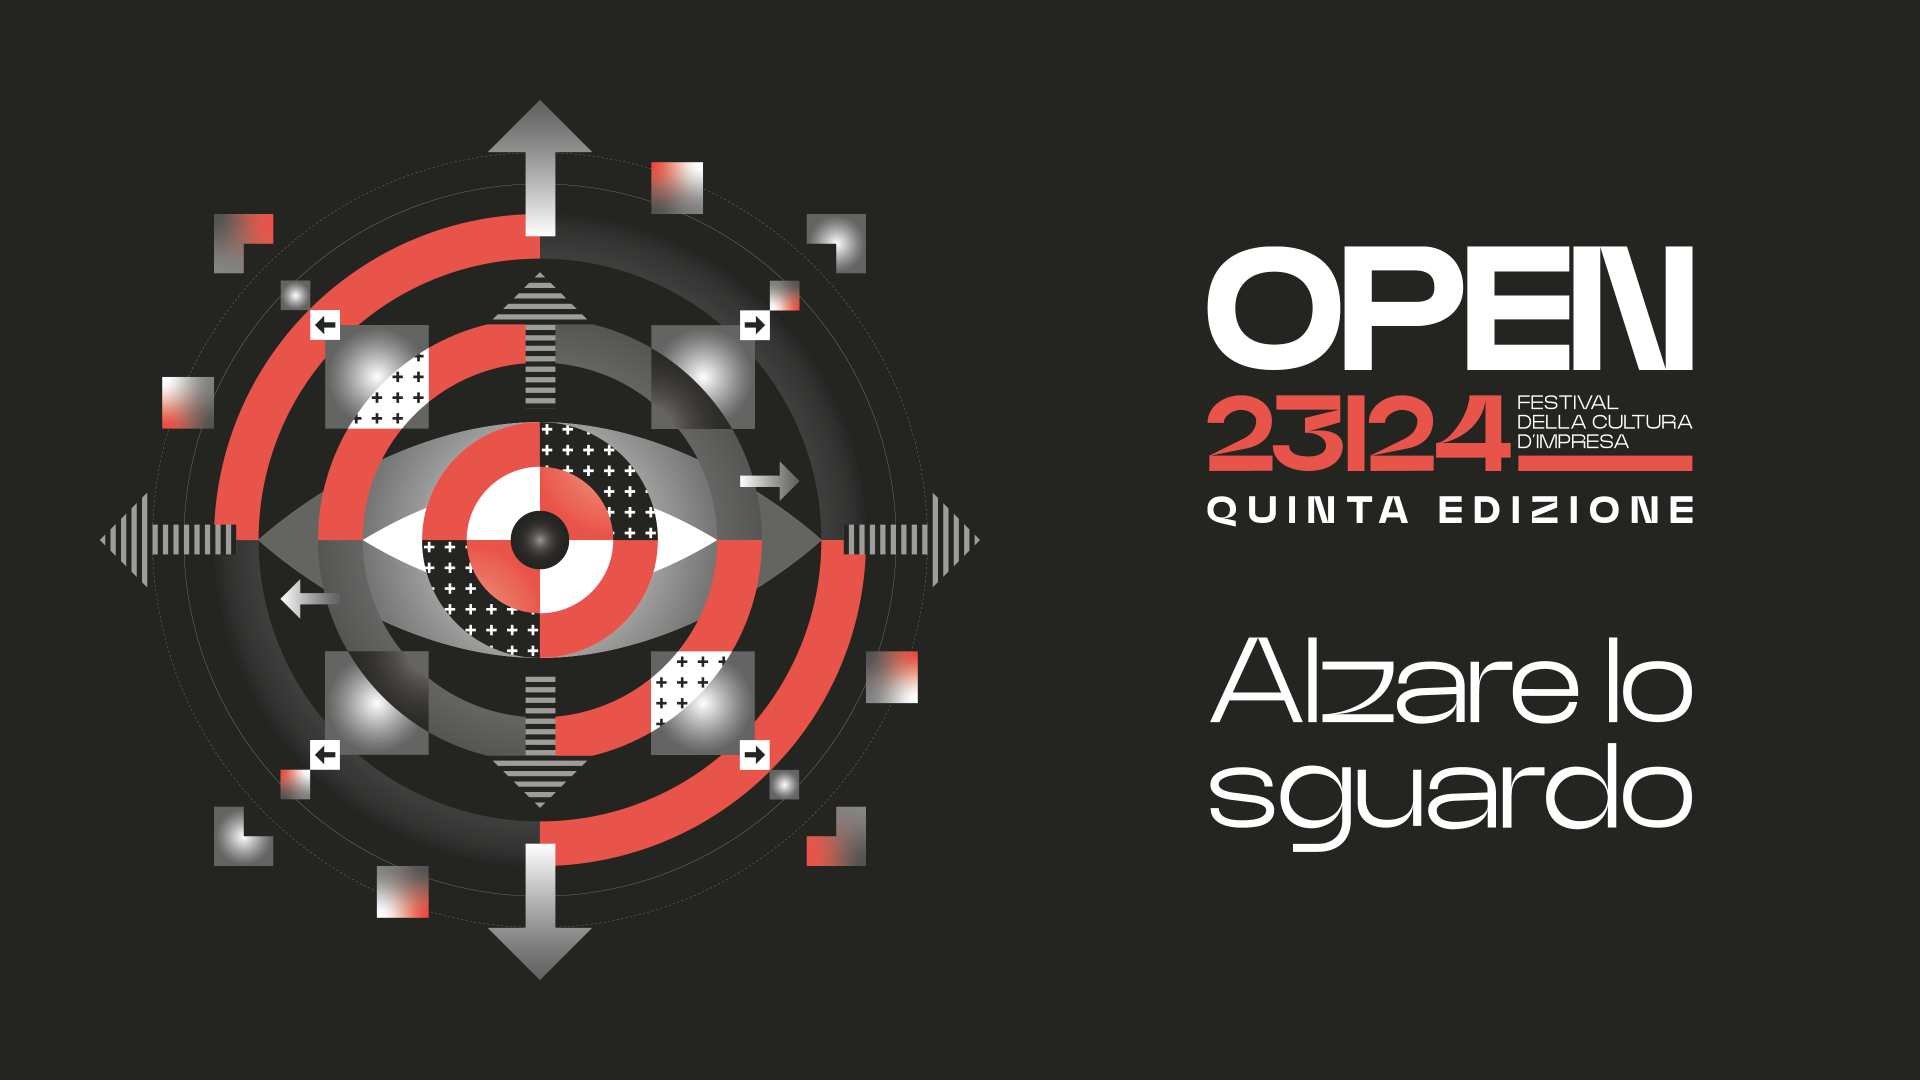 OPEN 23/24 - Festival della Cultura d'Impresa